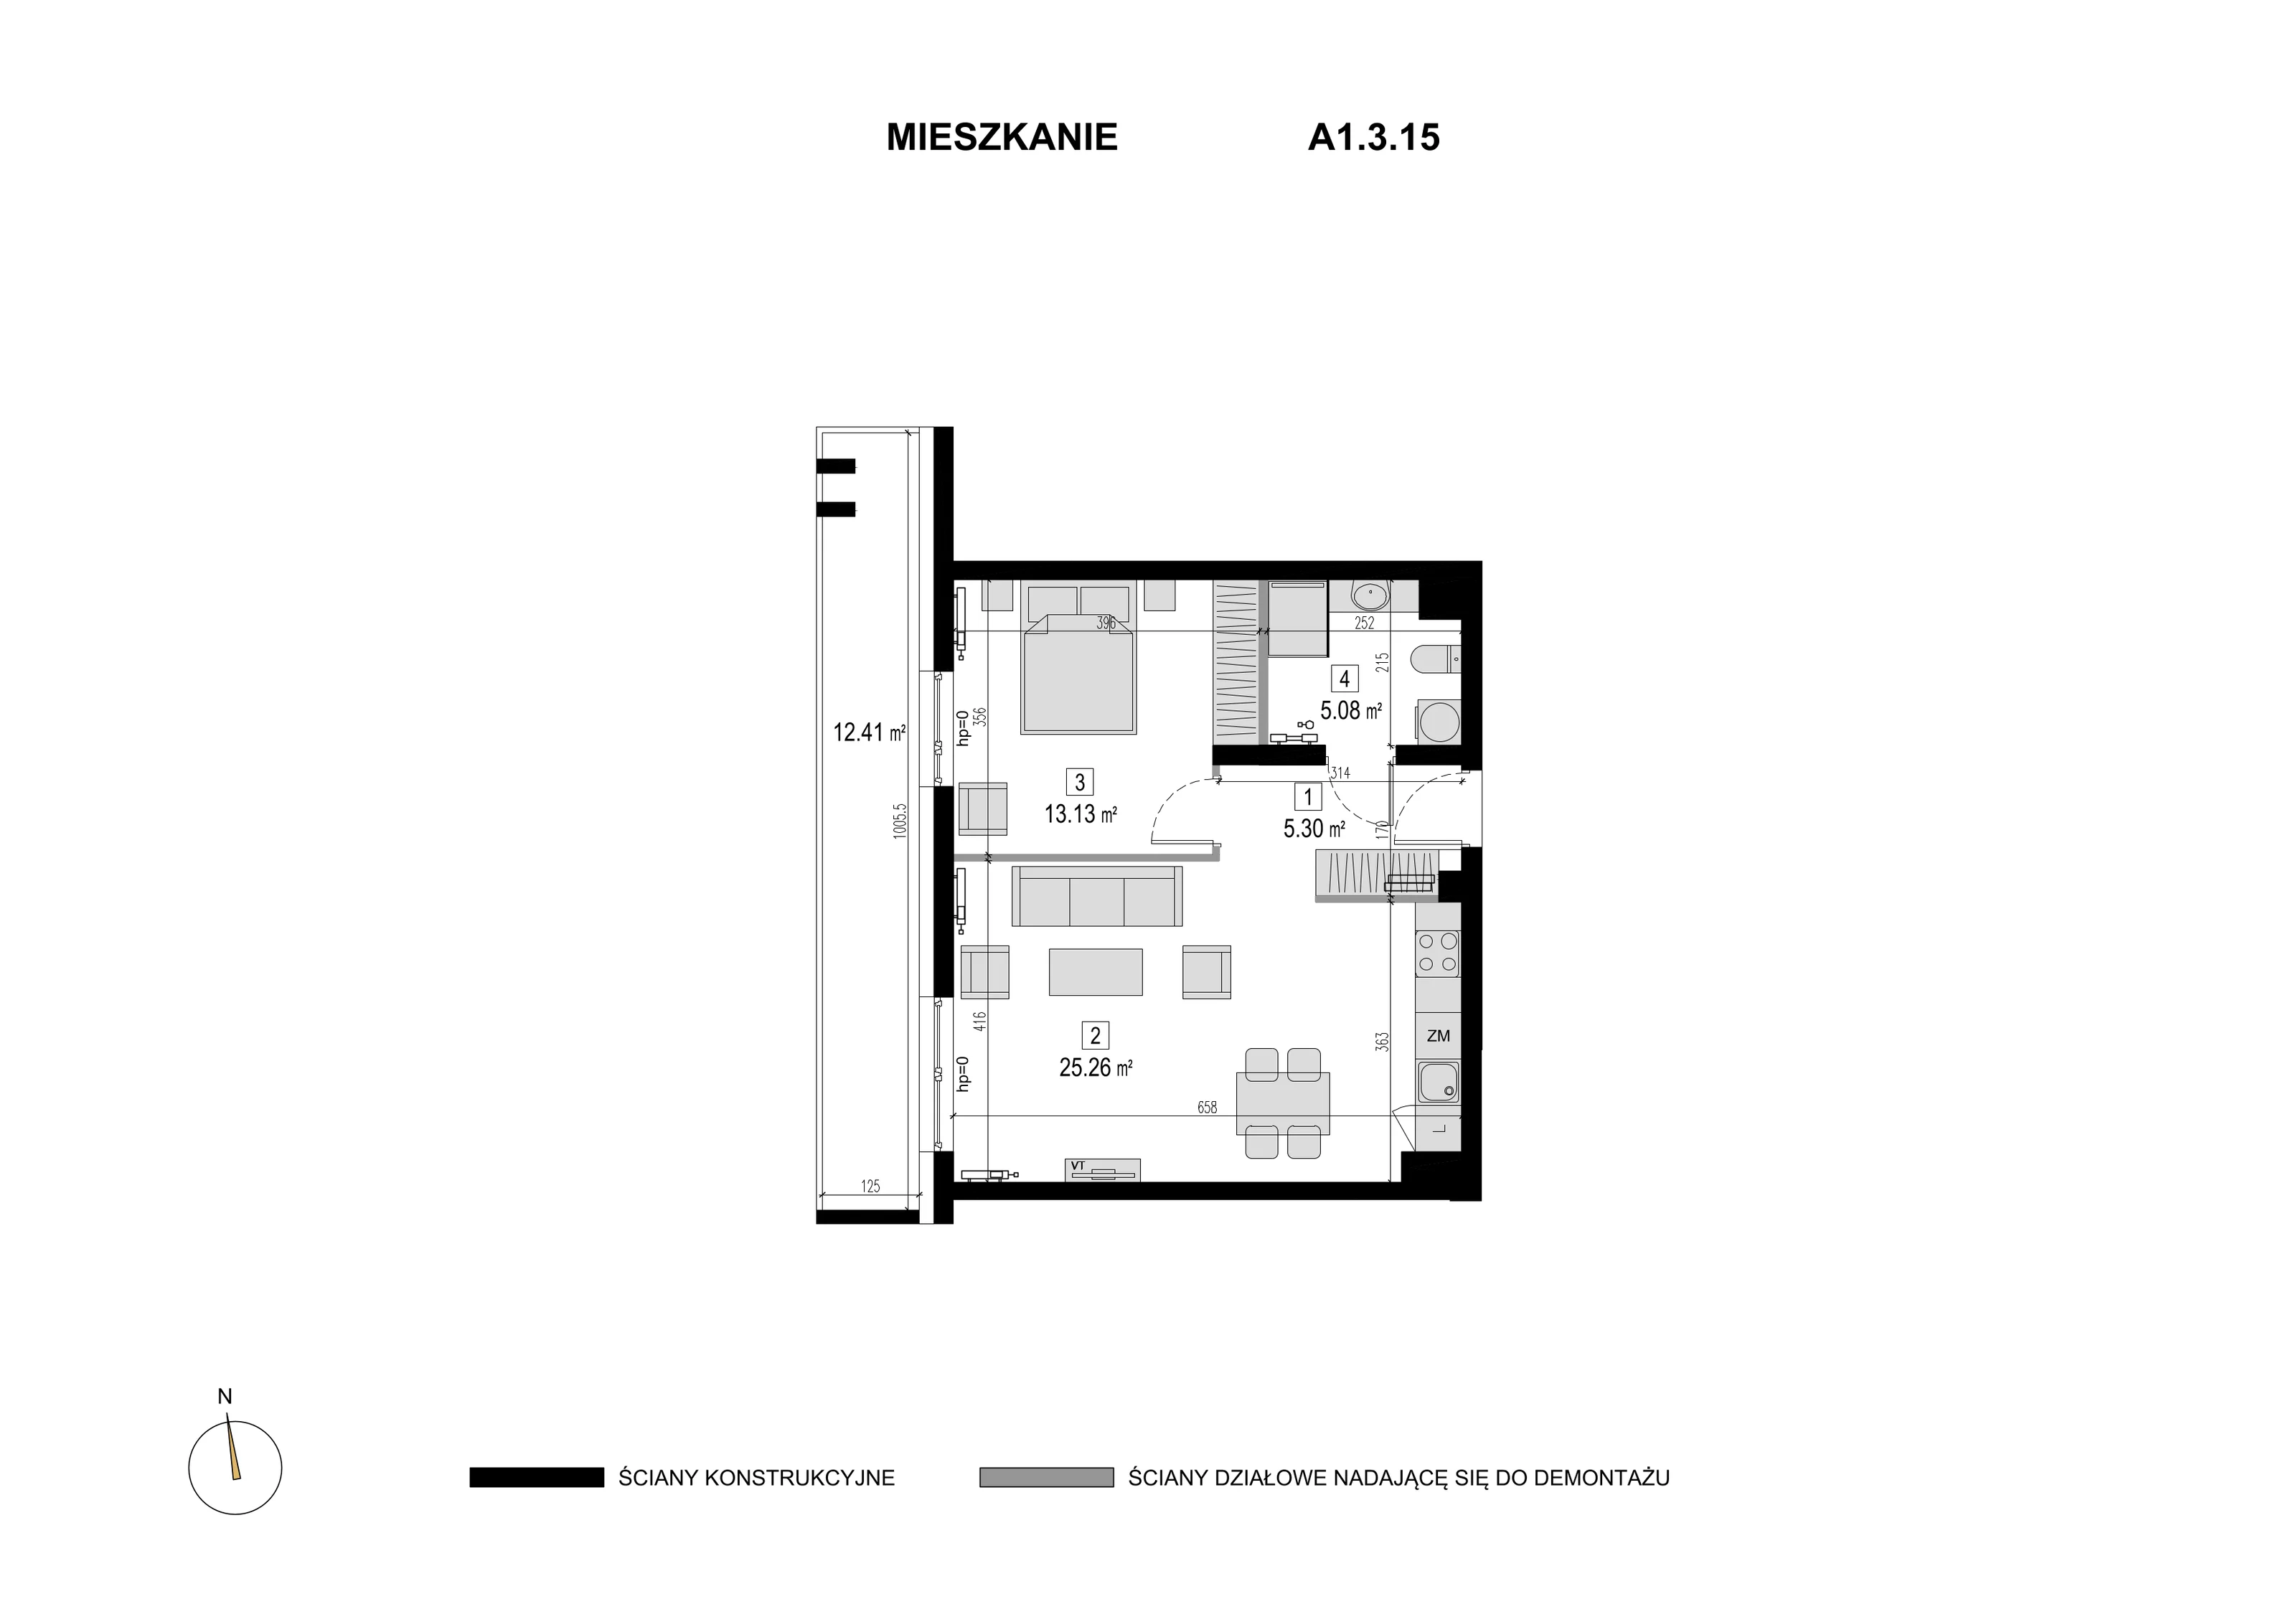 Mieszkanie 48,77 m², piętro 2, oferta nr A1.3.15, Novaforma, Legnica, ul. Chojnowska